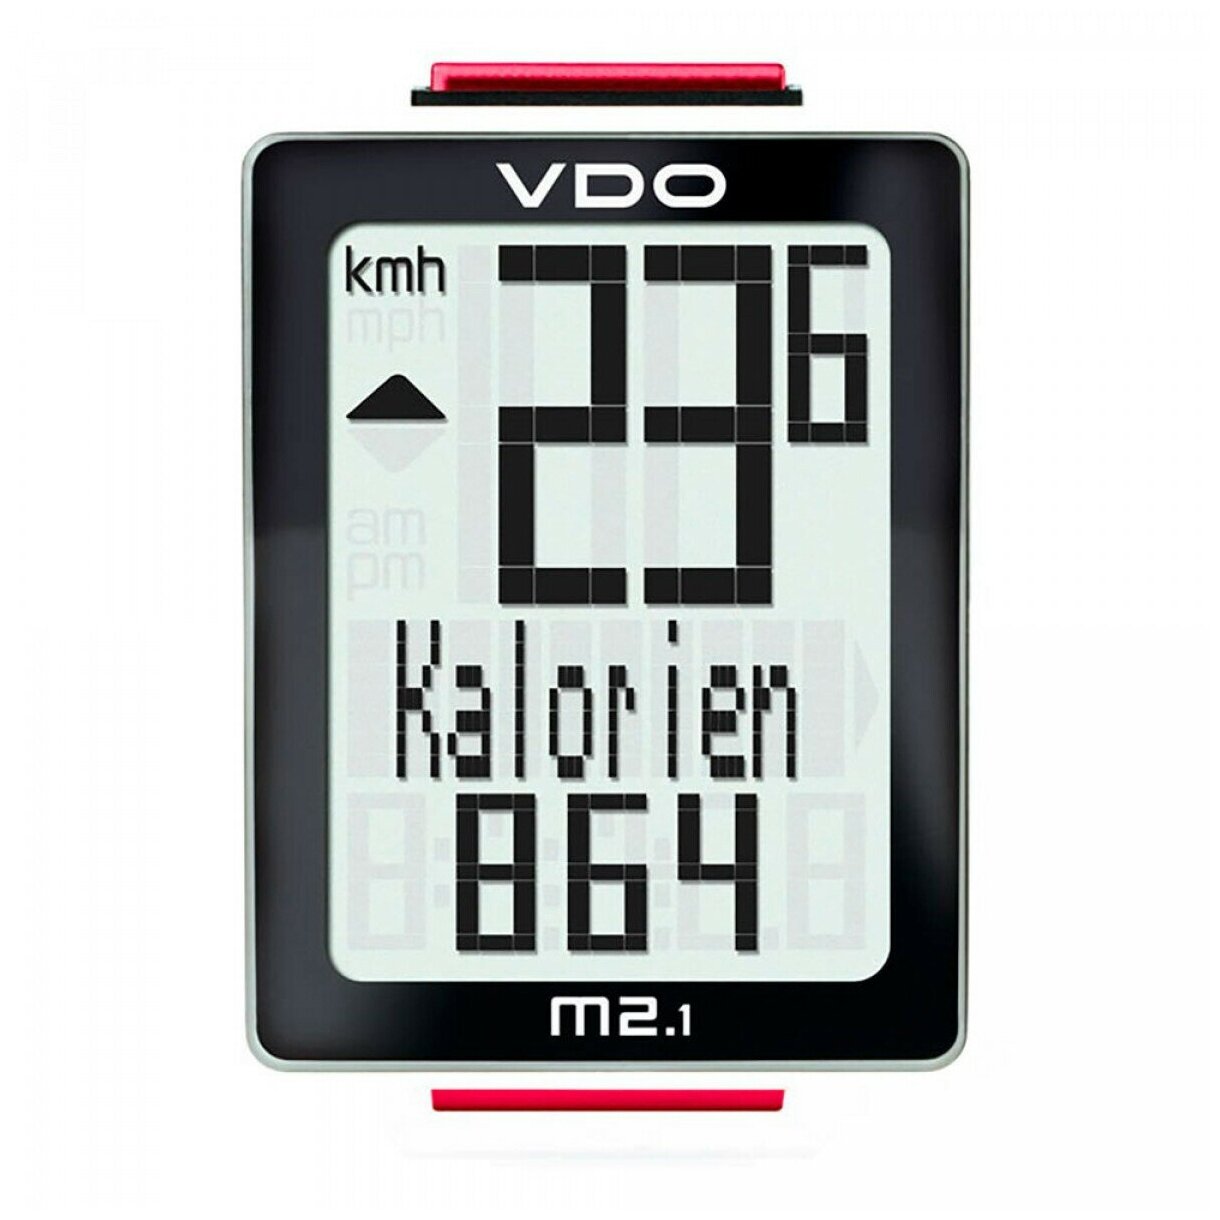 Велокомпьютер VDO M2.1, 10ф, 3-строчный дисплей